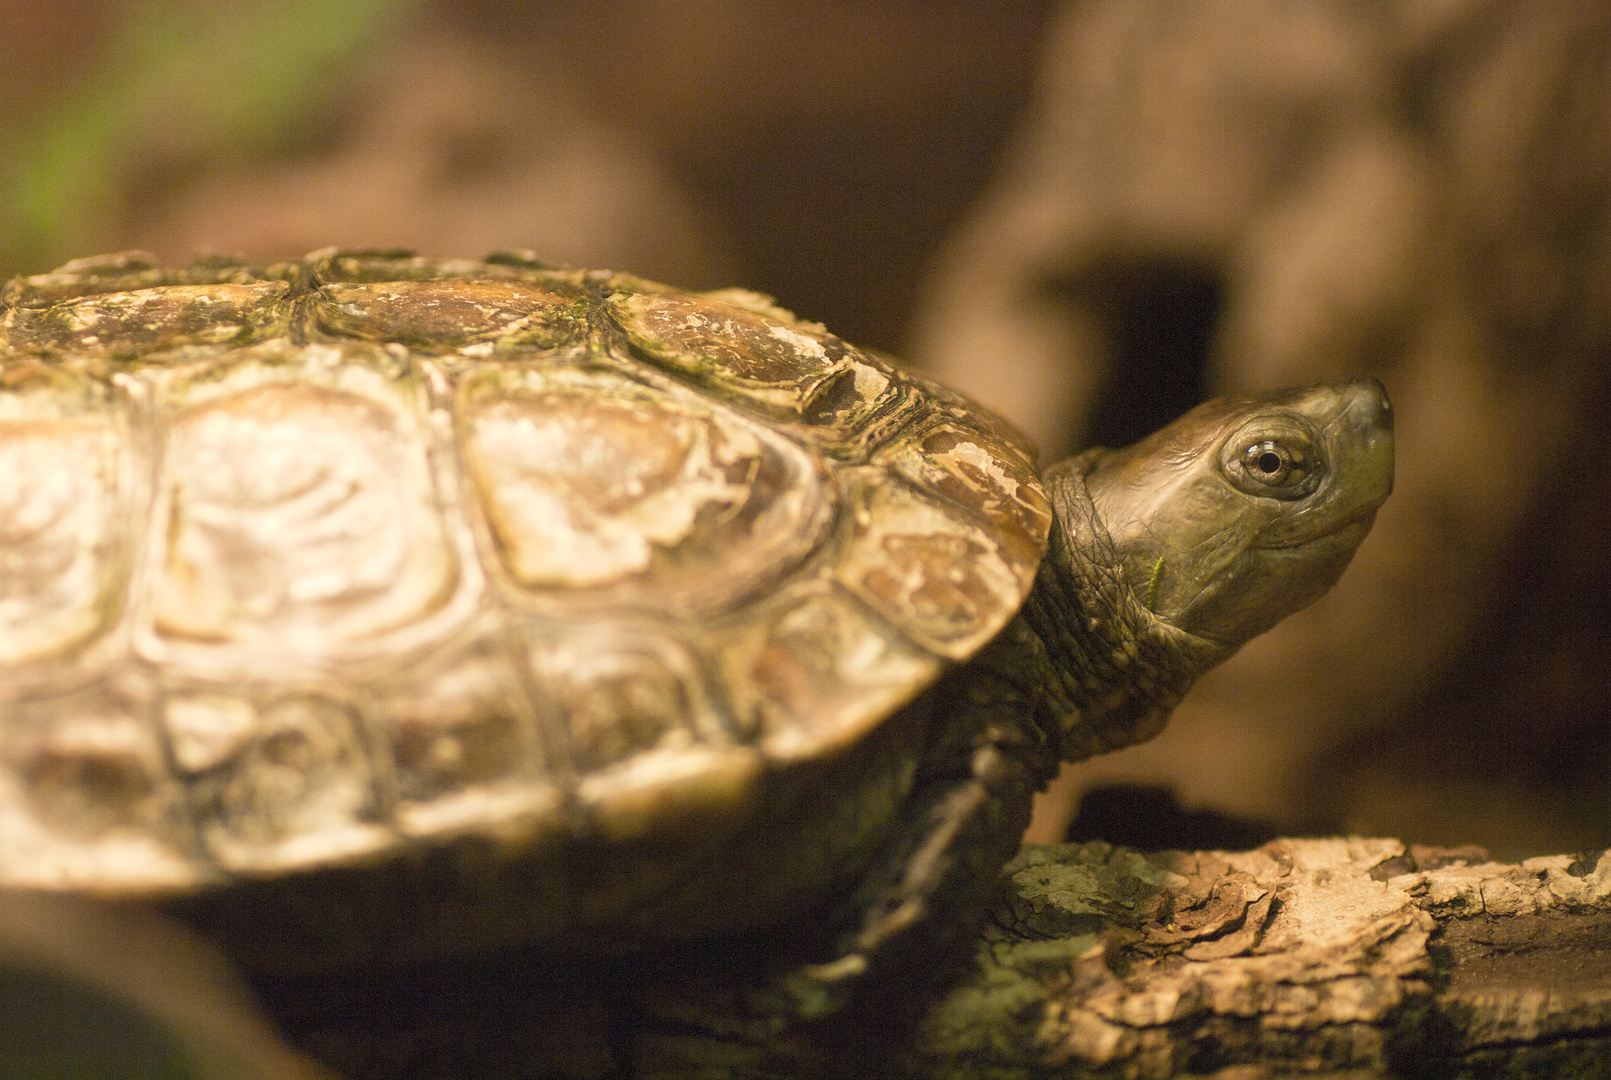 Spanische Wasserschildkröte - fotografiert in der Neu-Ulmer Reptiliensammlung